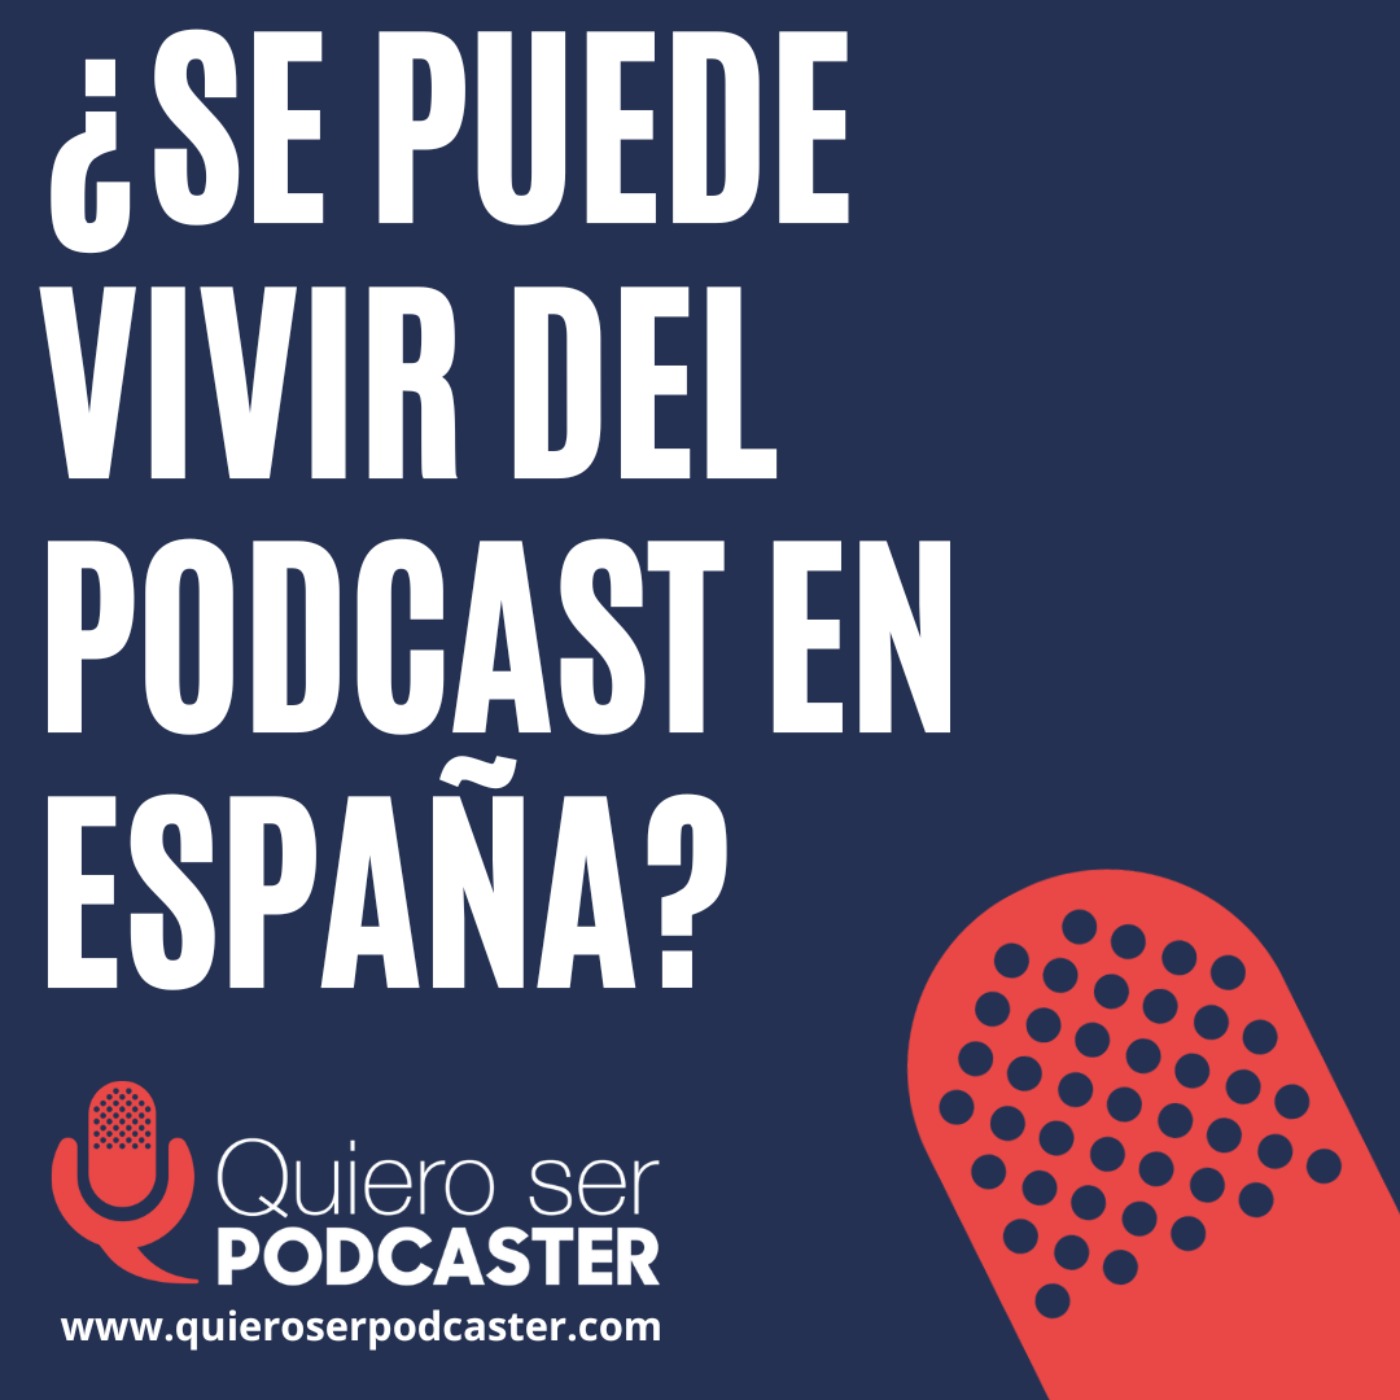 ¿Se puede vivir del podcast en España?